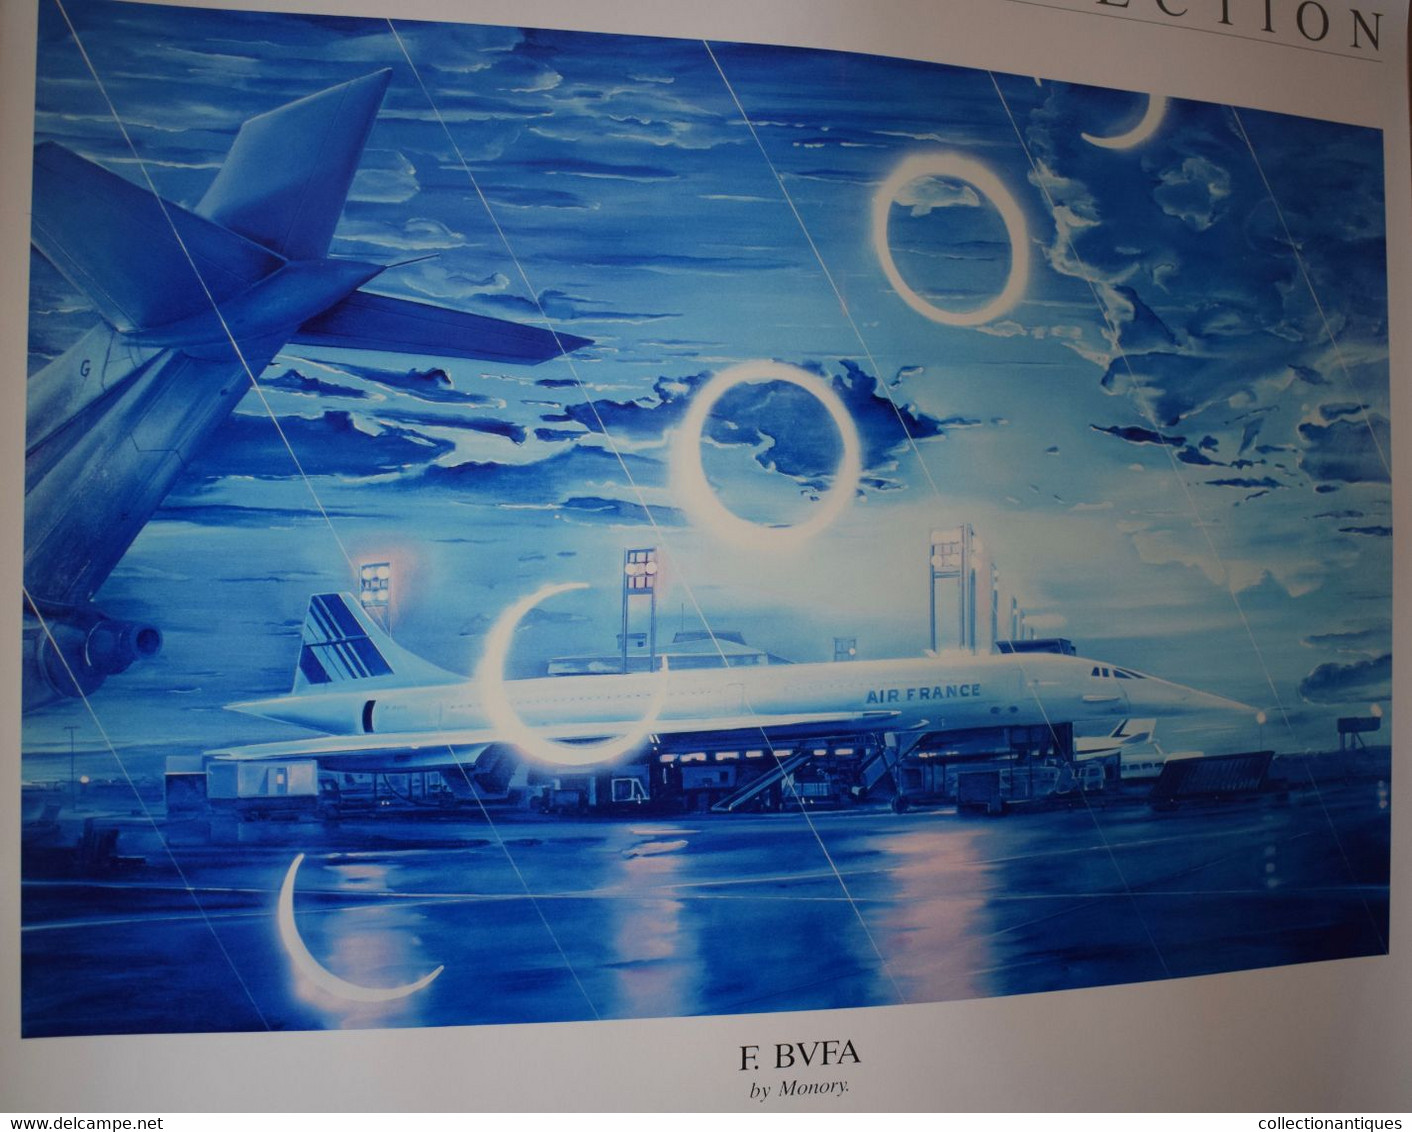 10 affiches Collection Air France 1988 promotion de la campagne "The Fine Art of FLying" par 10 artistes contemporains